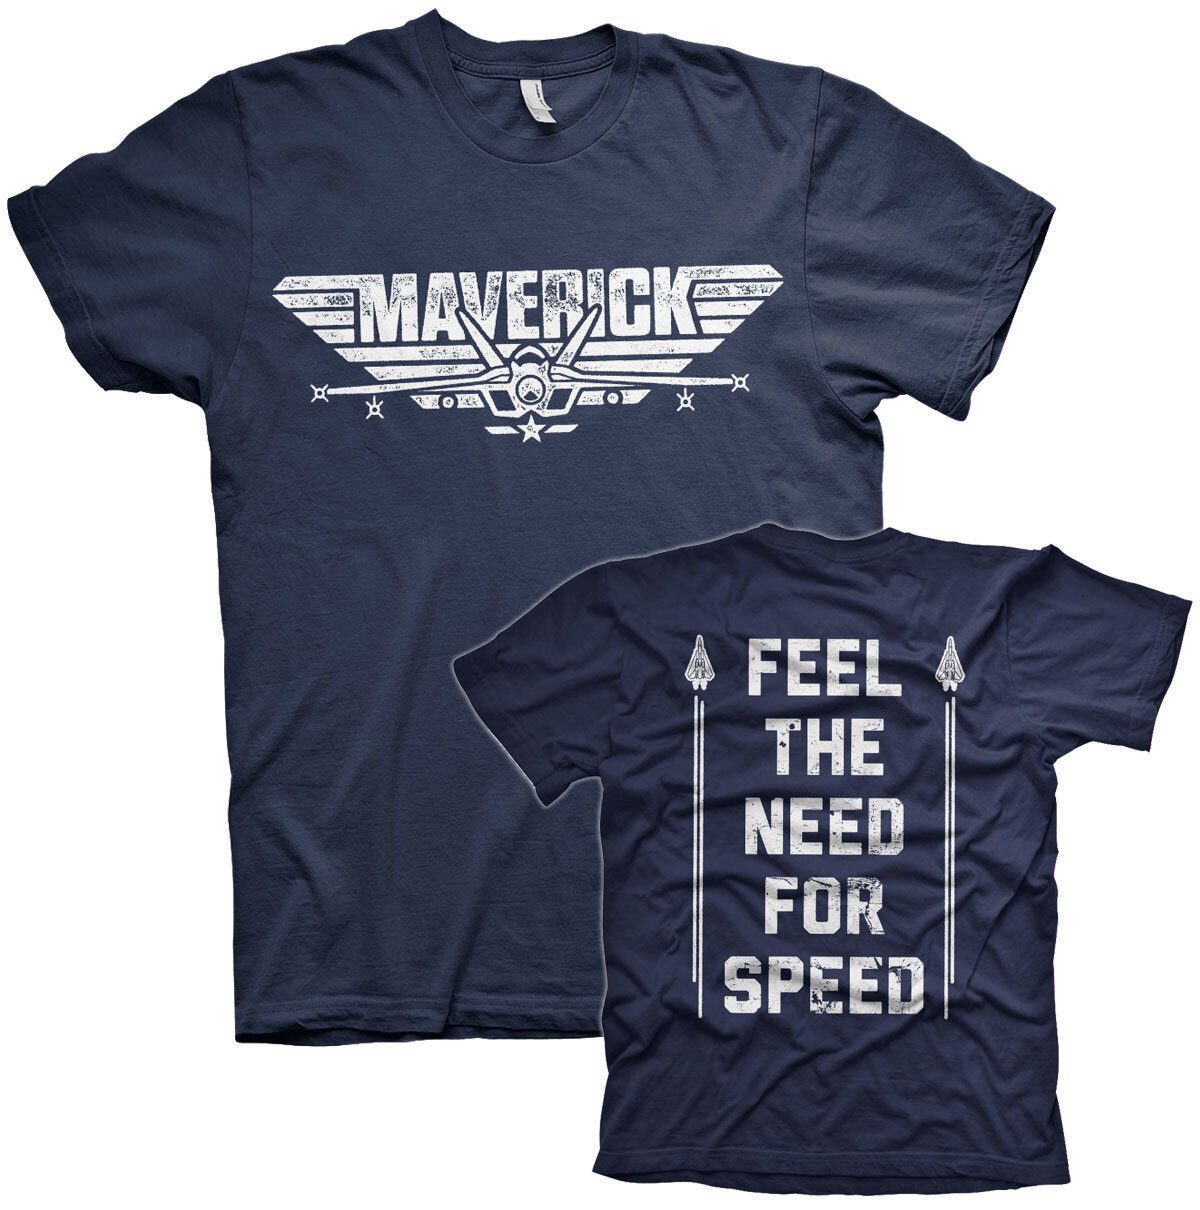 Top Gun Maverick - For Speed - Shirtstore